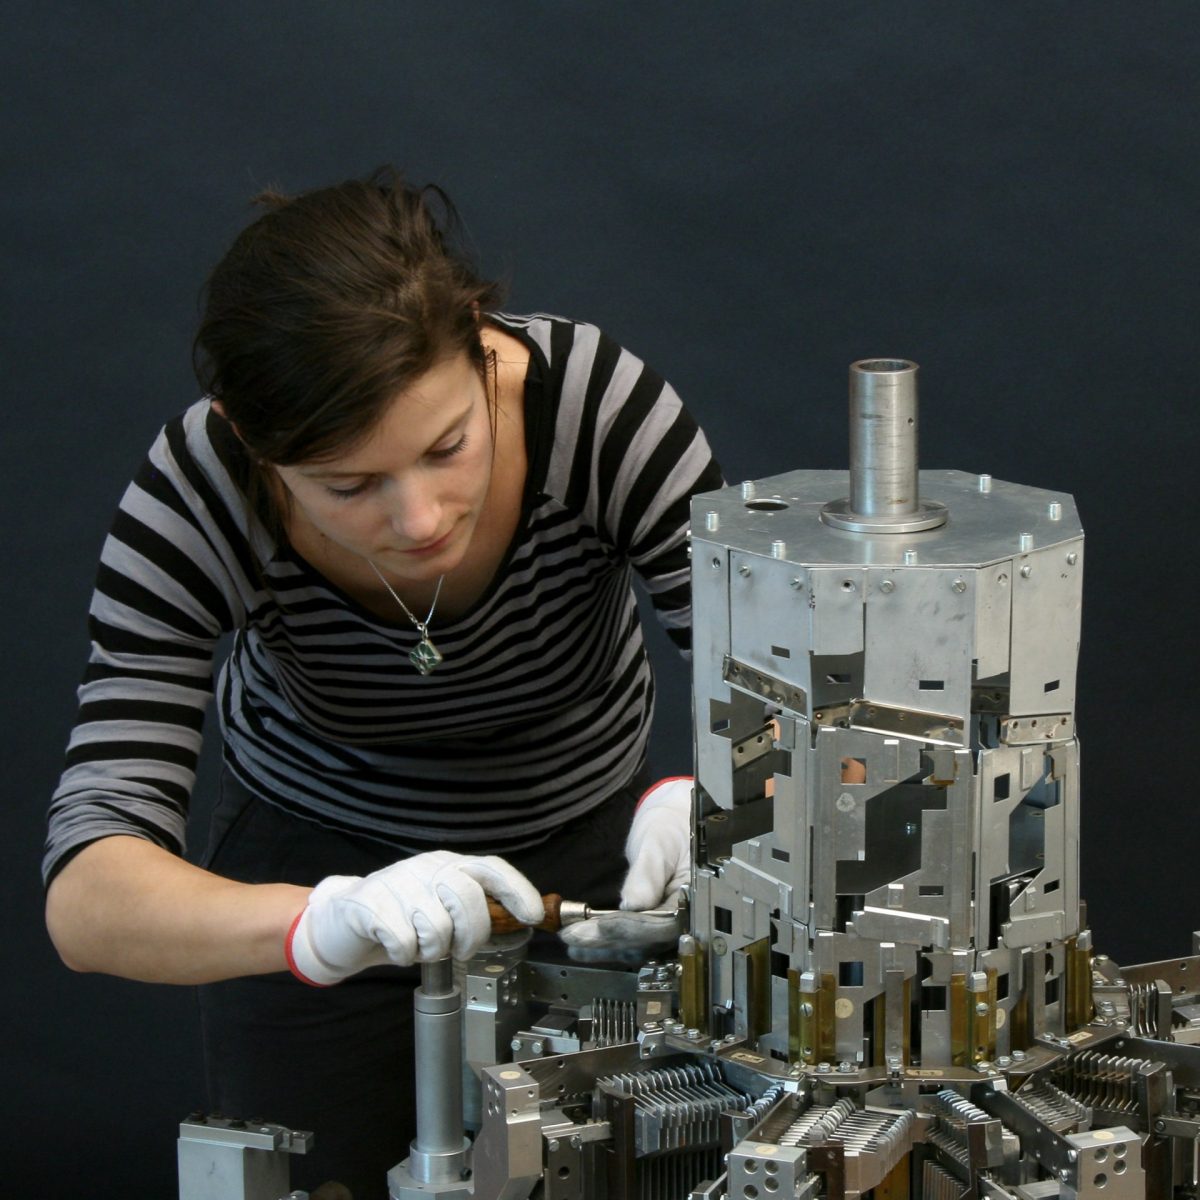 TUM alumna Dr. Nora Eibisch next to Konrad Zuse's helix tower in the workshop for scientific instruments of the Deutsches Museum.